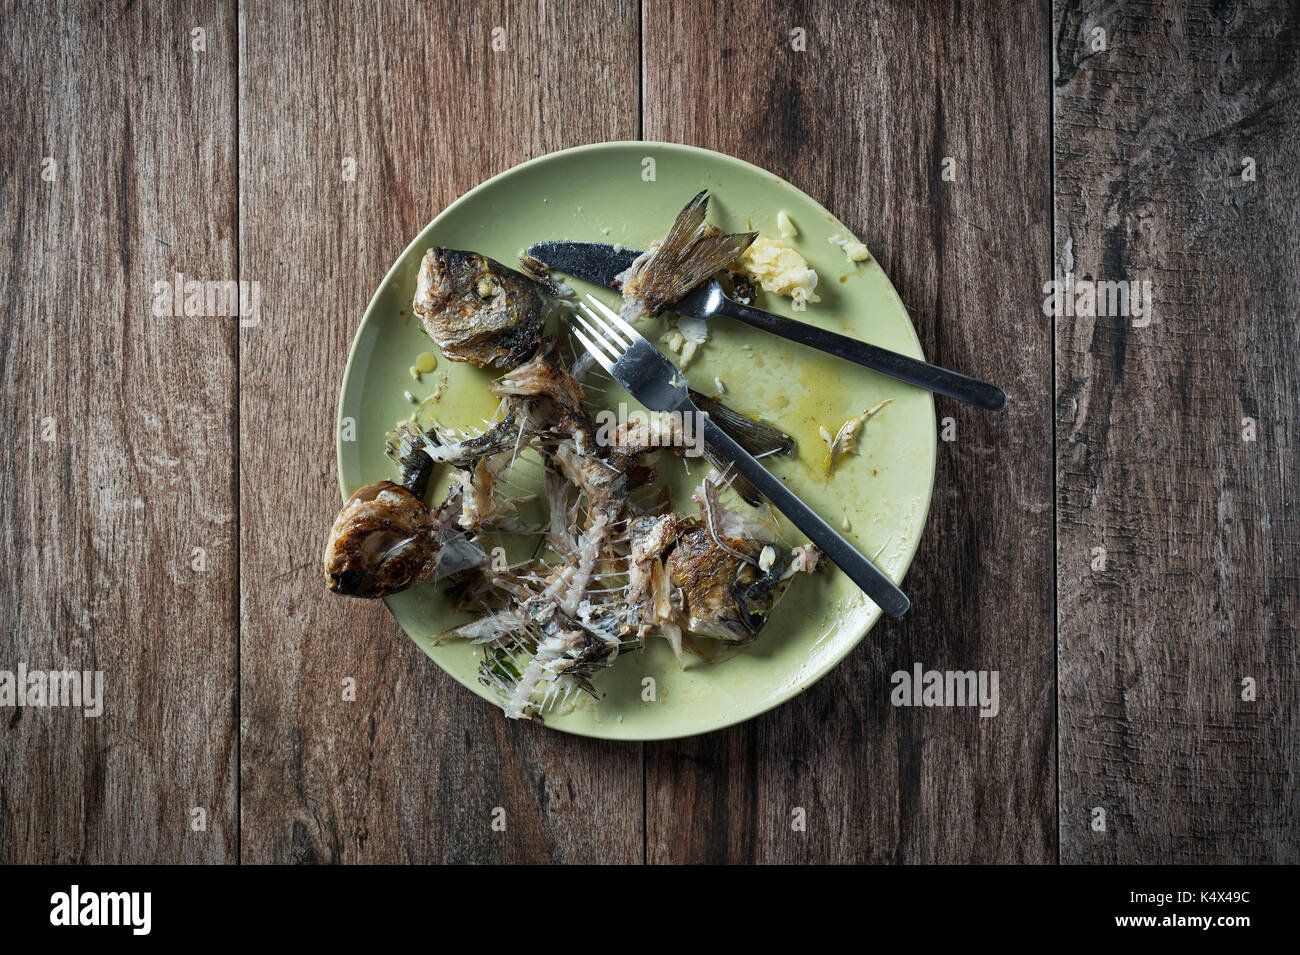 Fisch auf dem Teller mit Messer und Gabel beiseite stellen. Essensreste, Hausmüll entsorgt. Stockfoto